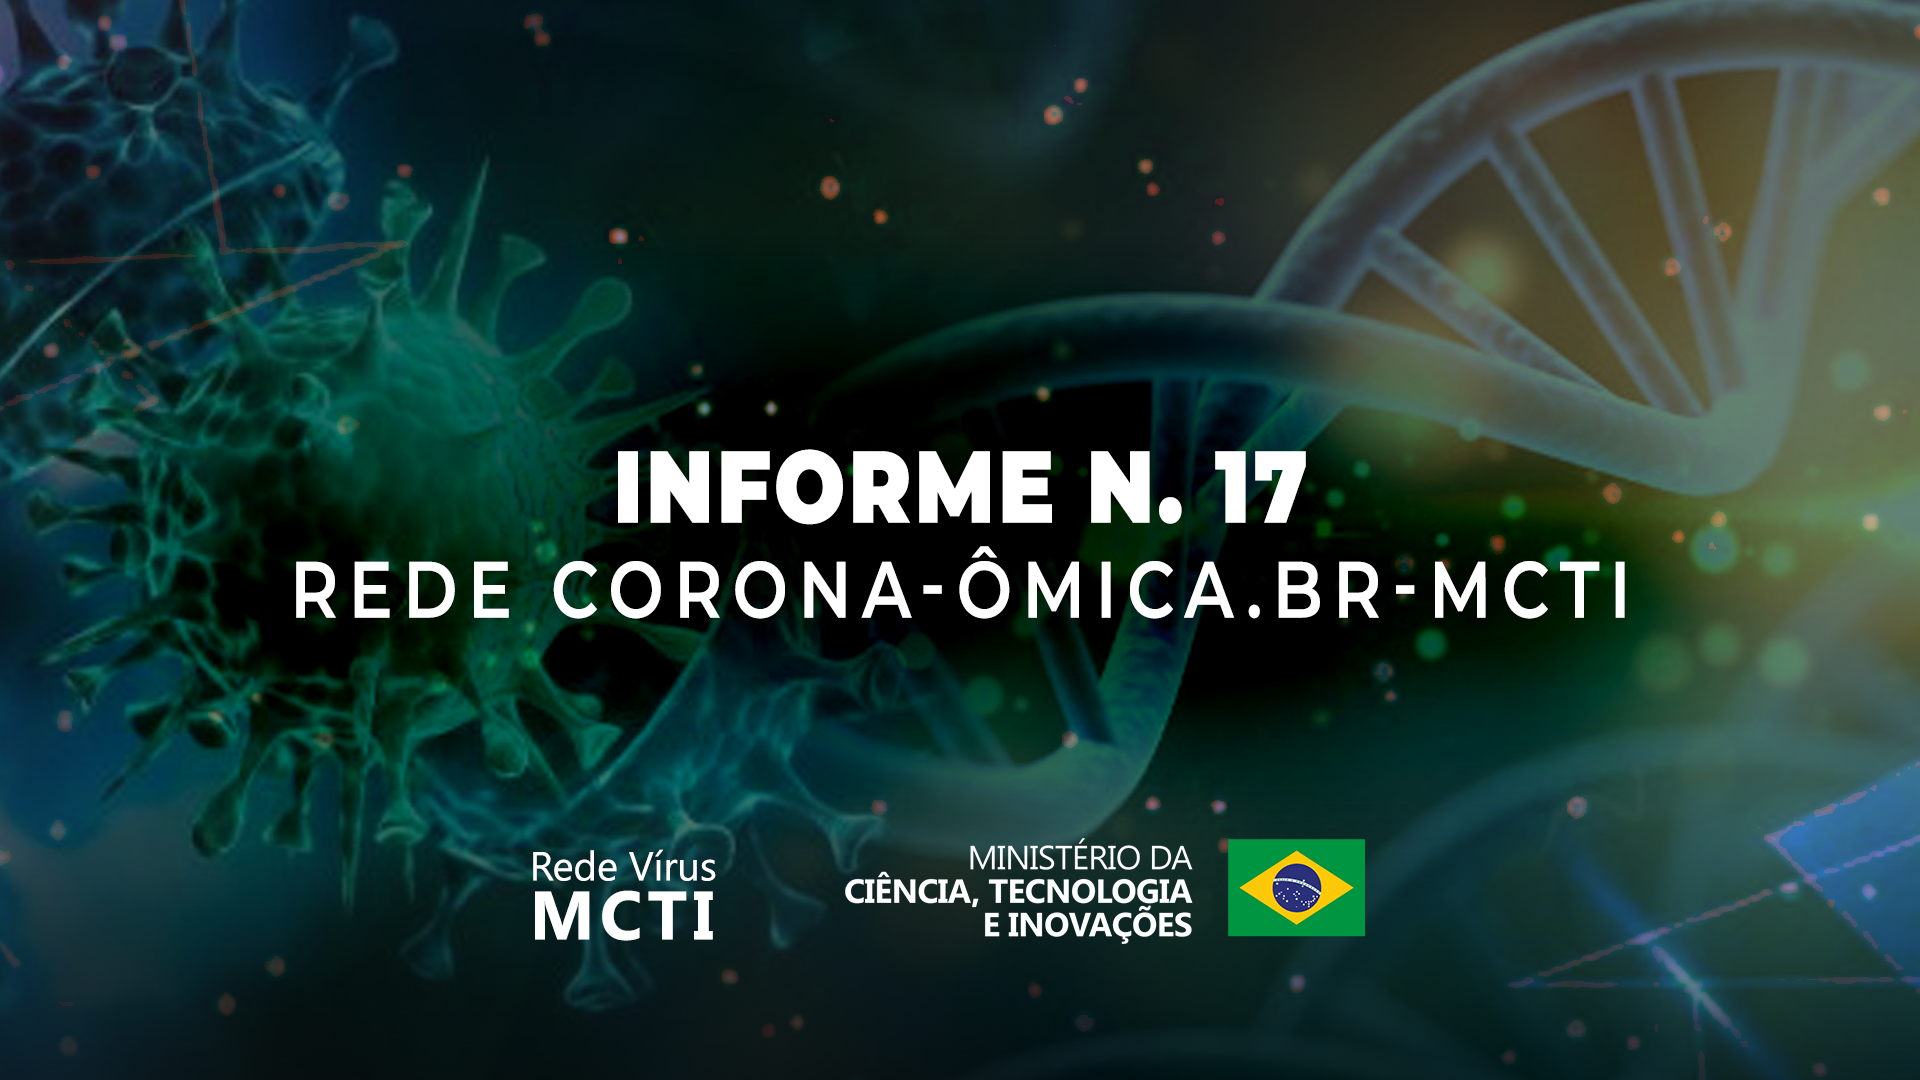 Rede Corona-ômica BR MCTI estuda a dispersão do vírus SARS-CoV-2 no estado do Acre e identifica linhagem ainda não descrita no Brasil